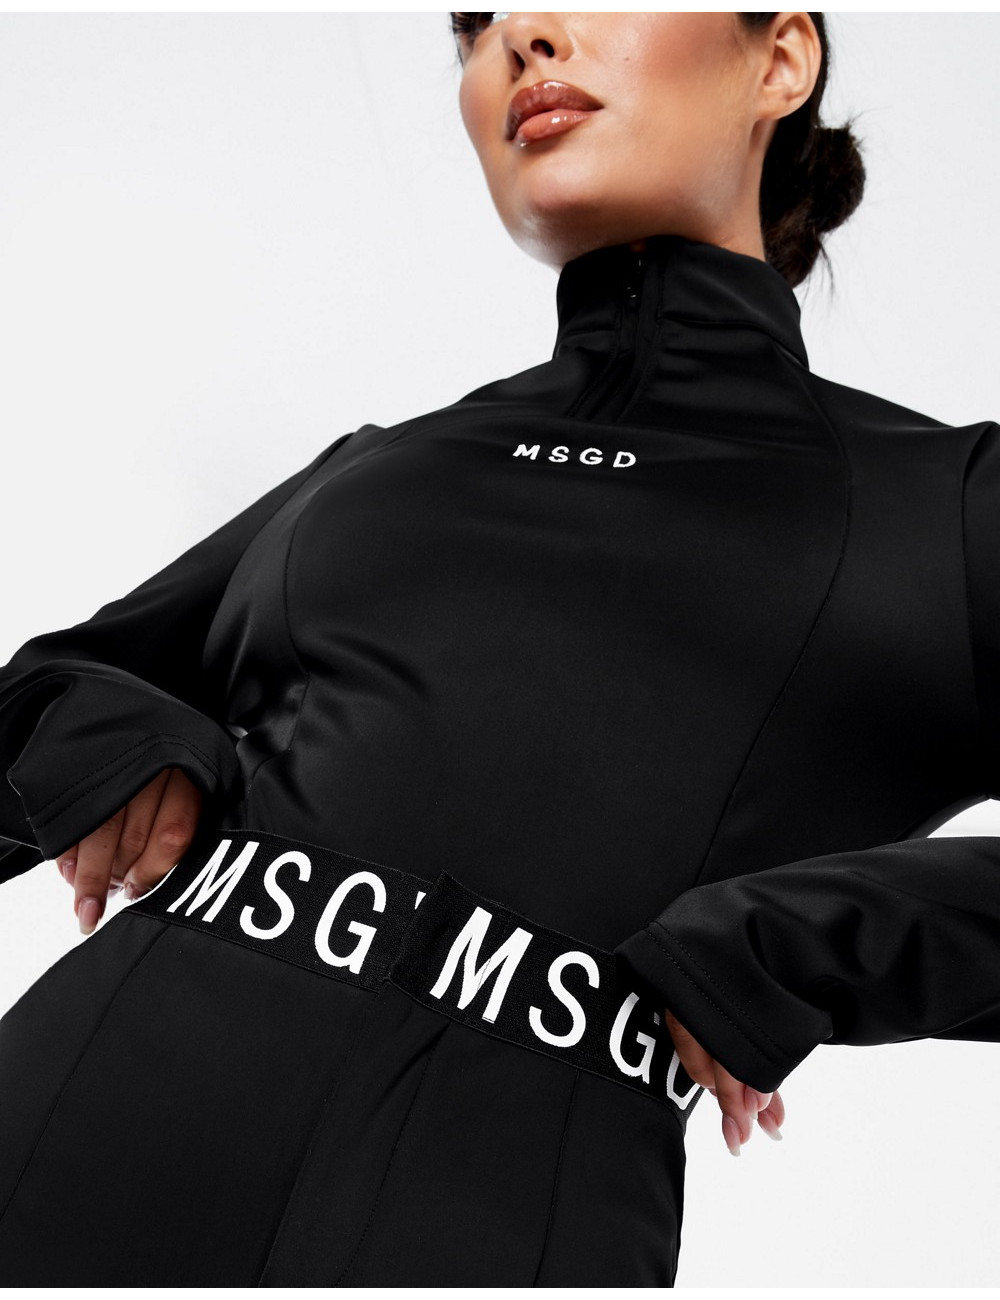 Missguided Ski High Neck Bodysuit In Black for Women